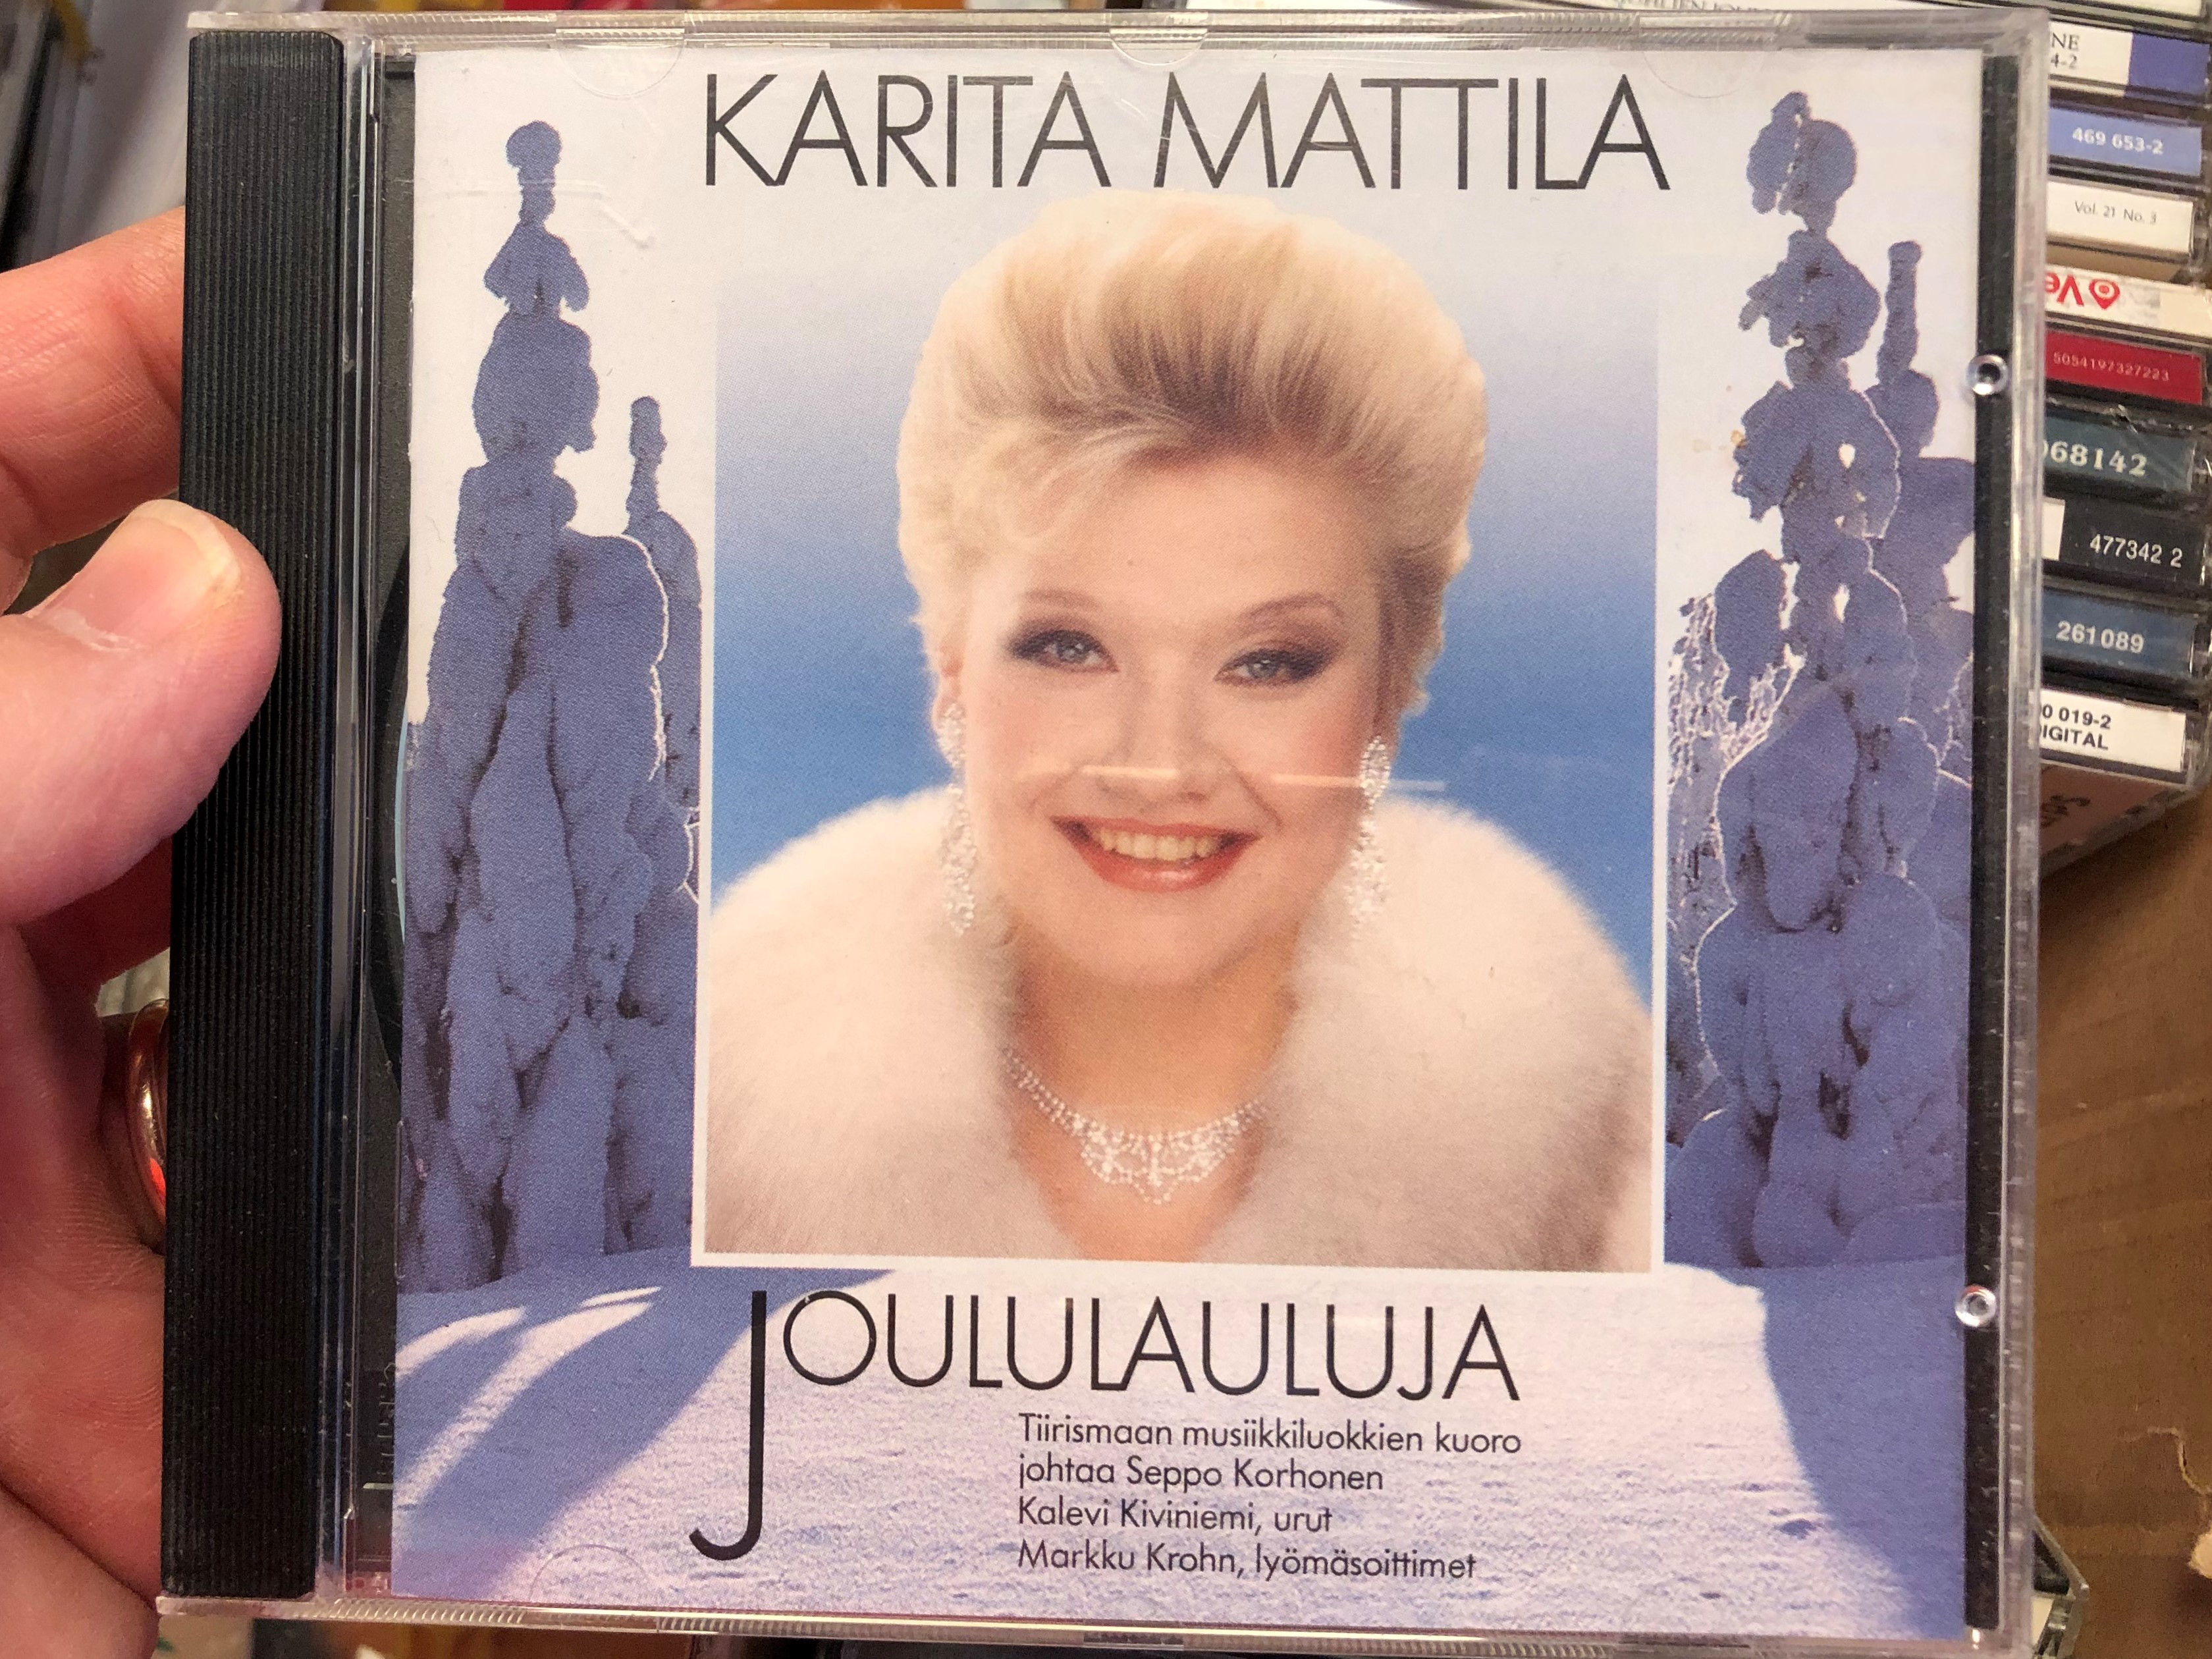 karita-mattila-joululauluja-tiirismaan-musiikkiluokkien-kuoro-jahtaa-seppo-korhonen-kalevi-kiviniemi-urut-markku-krohn-lyomasoittimet-lahti-organ-festival-audio-cd-1992-lofcd-101-1-.jpg